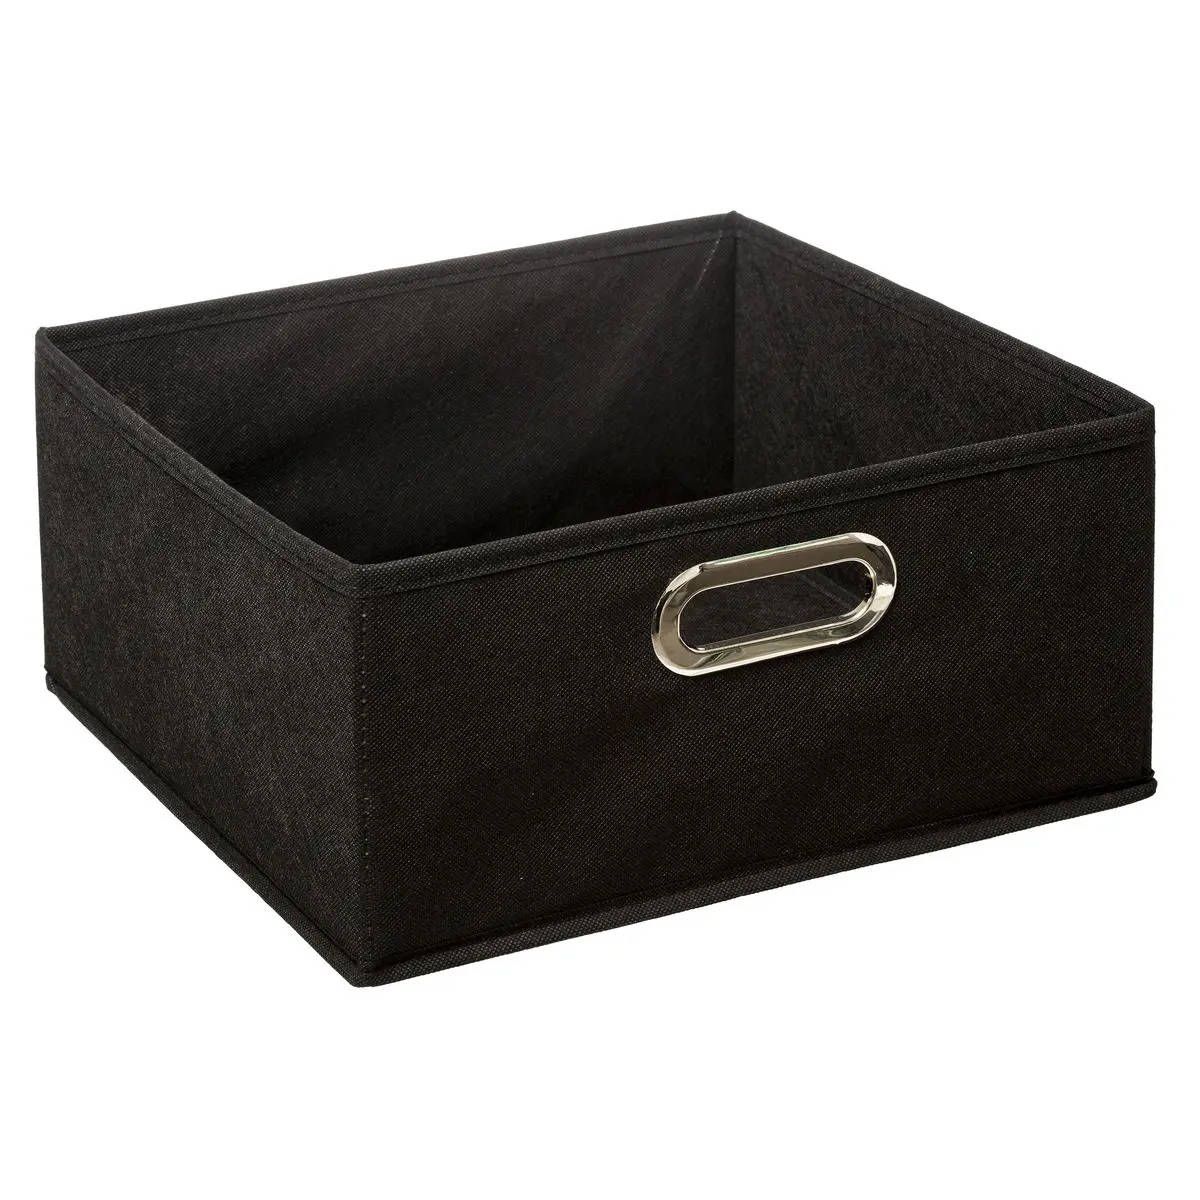 5five Simply Smart Úložný box, textilní, černý, 31 x 15 cm, ideální na oblečení - EMAKO.CZ s.r.o.